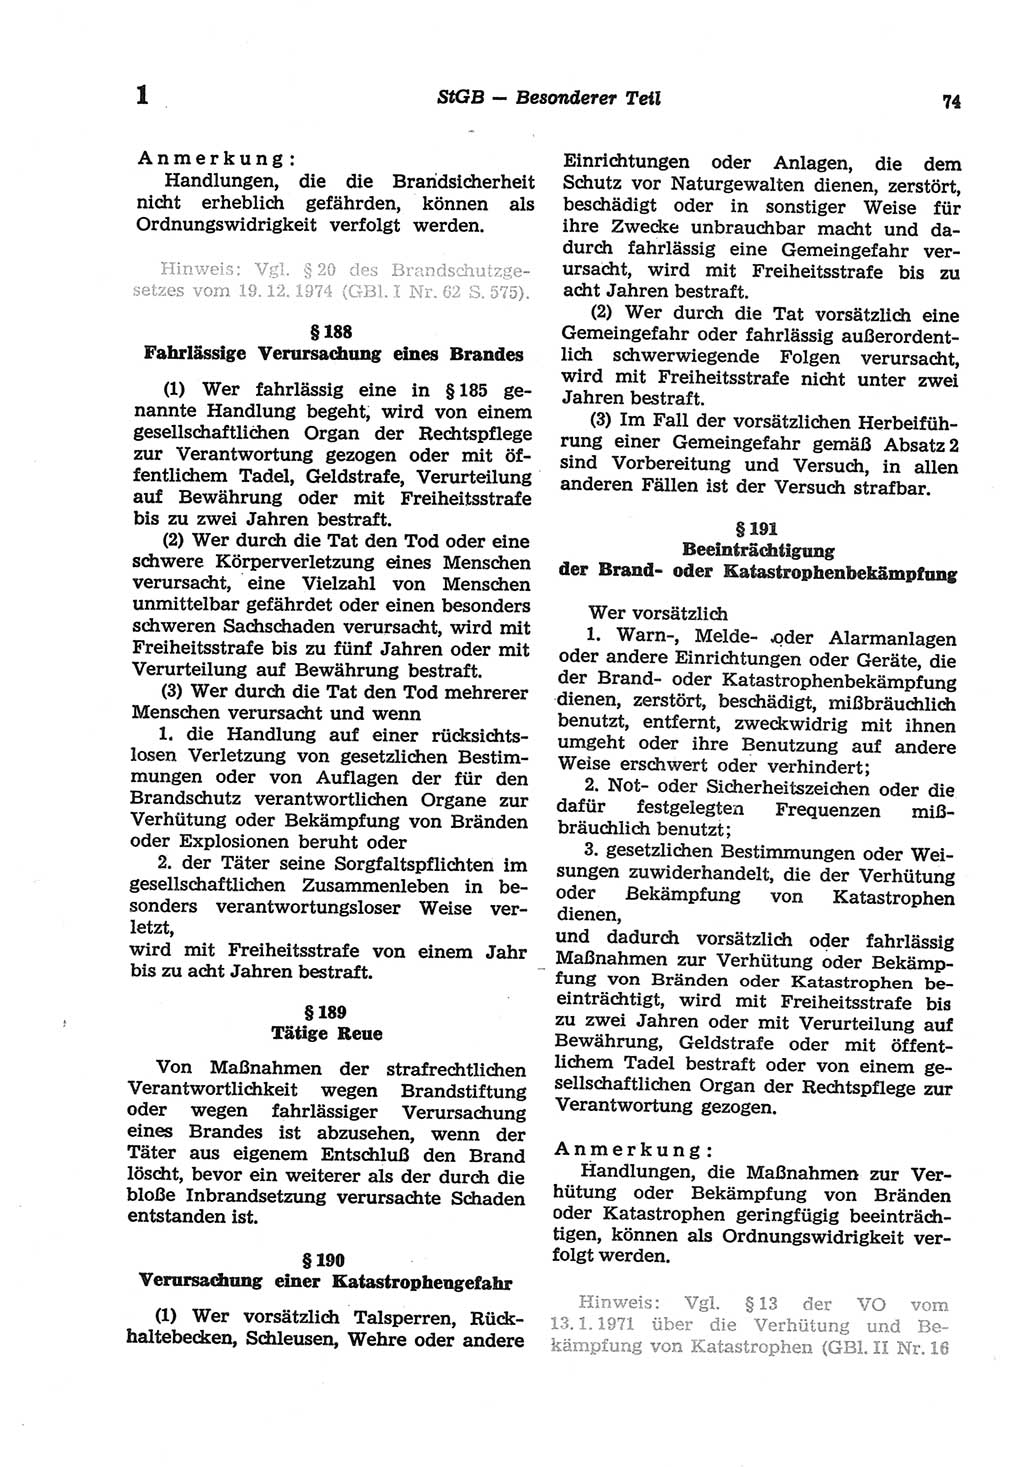 Strafgesetzbuch (StGB) der Deutschen Demokratischen Republik (DDR) und angrenzende Gesetze und Bestimmungen 1977, Seite 74 (StGB DDR Ges. Best. 1977, S. 74)